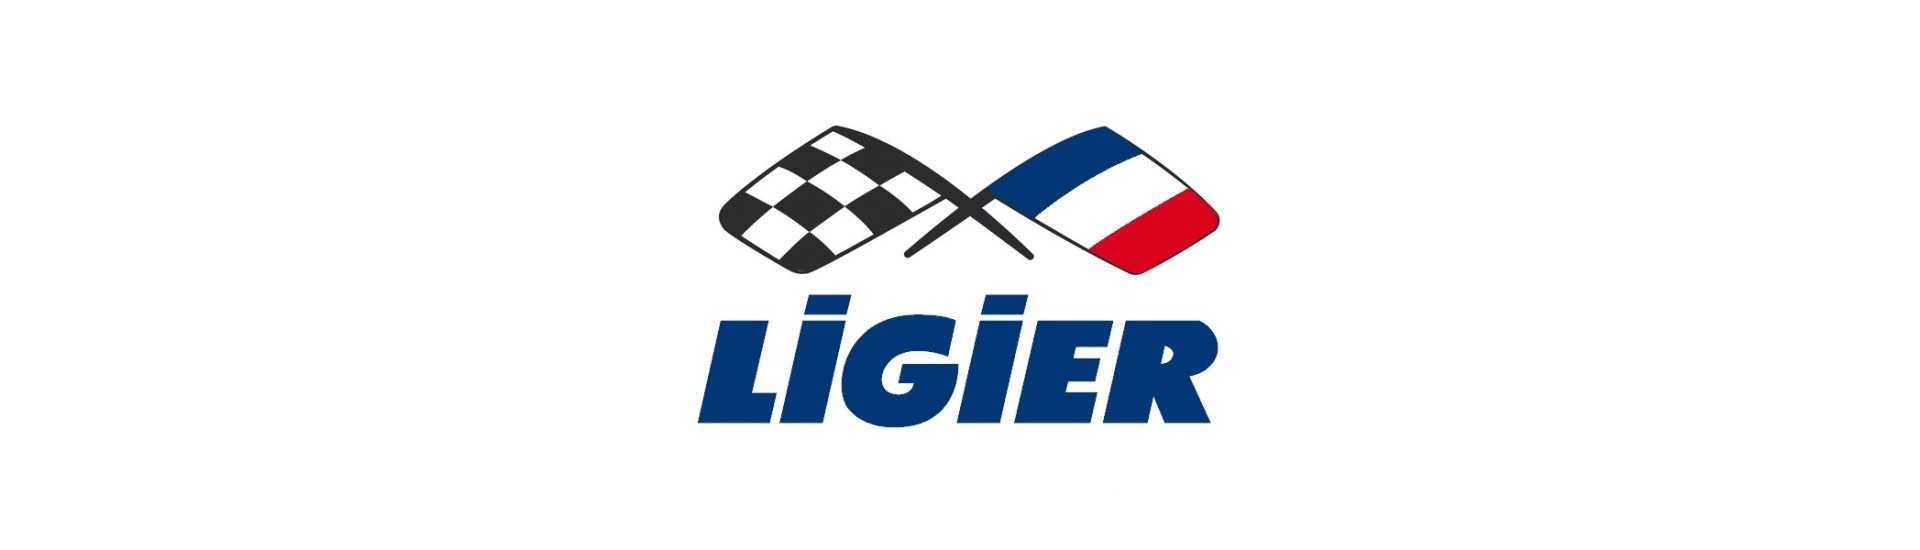 Bästa prisindikator för bil utan tillstånd Ligier